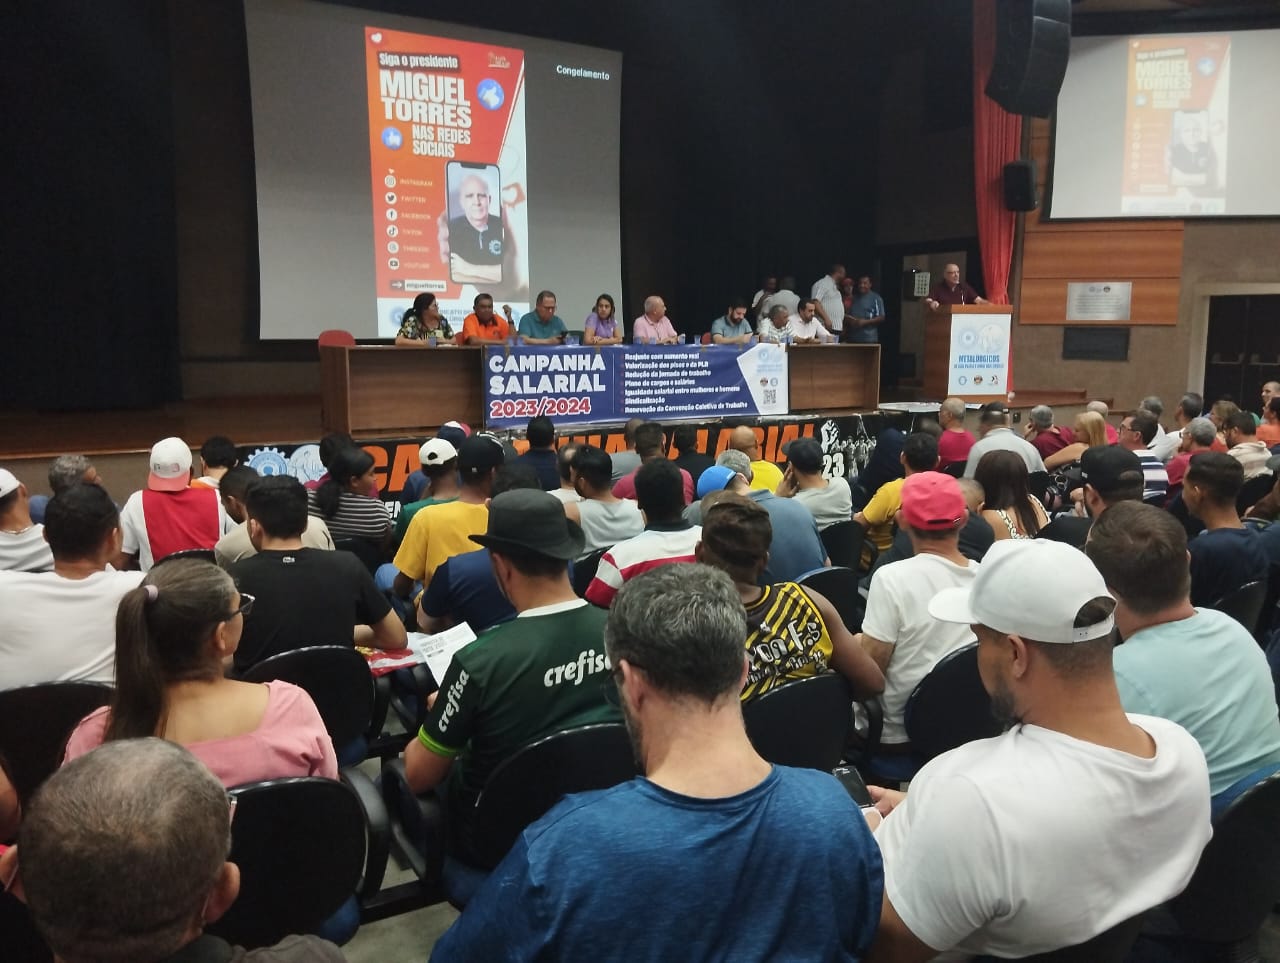 Campanha Salarial: Representantes de diversas empresas de São Paulo e Mogi lotam o auditório da entidade/Foto: Jaelcio Santana